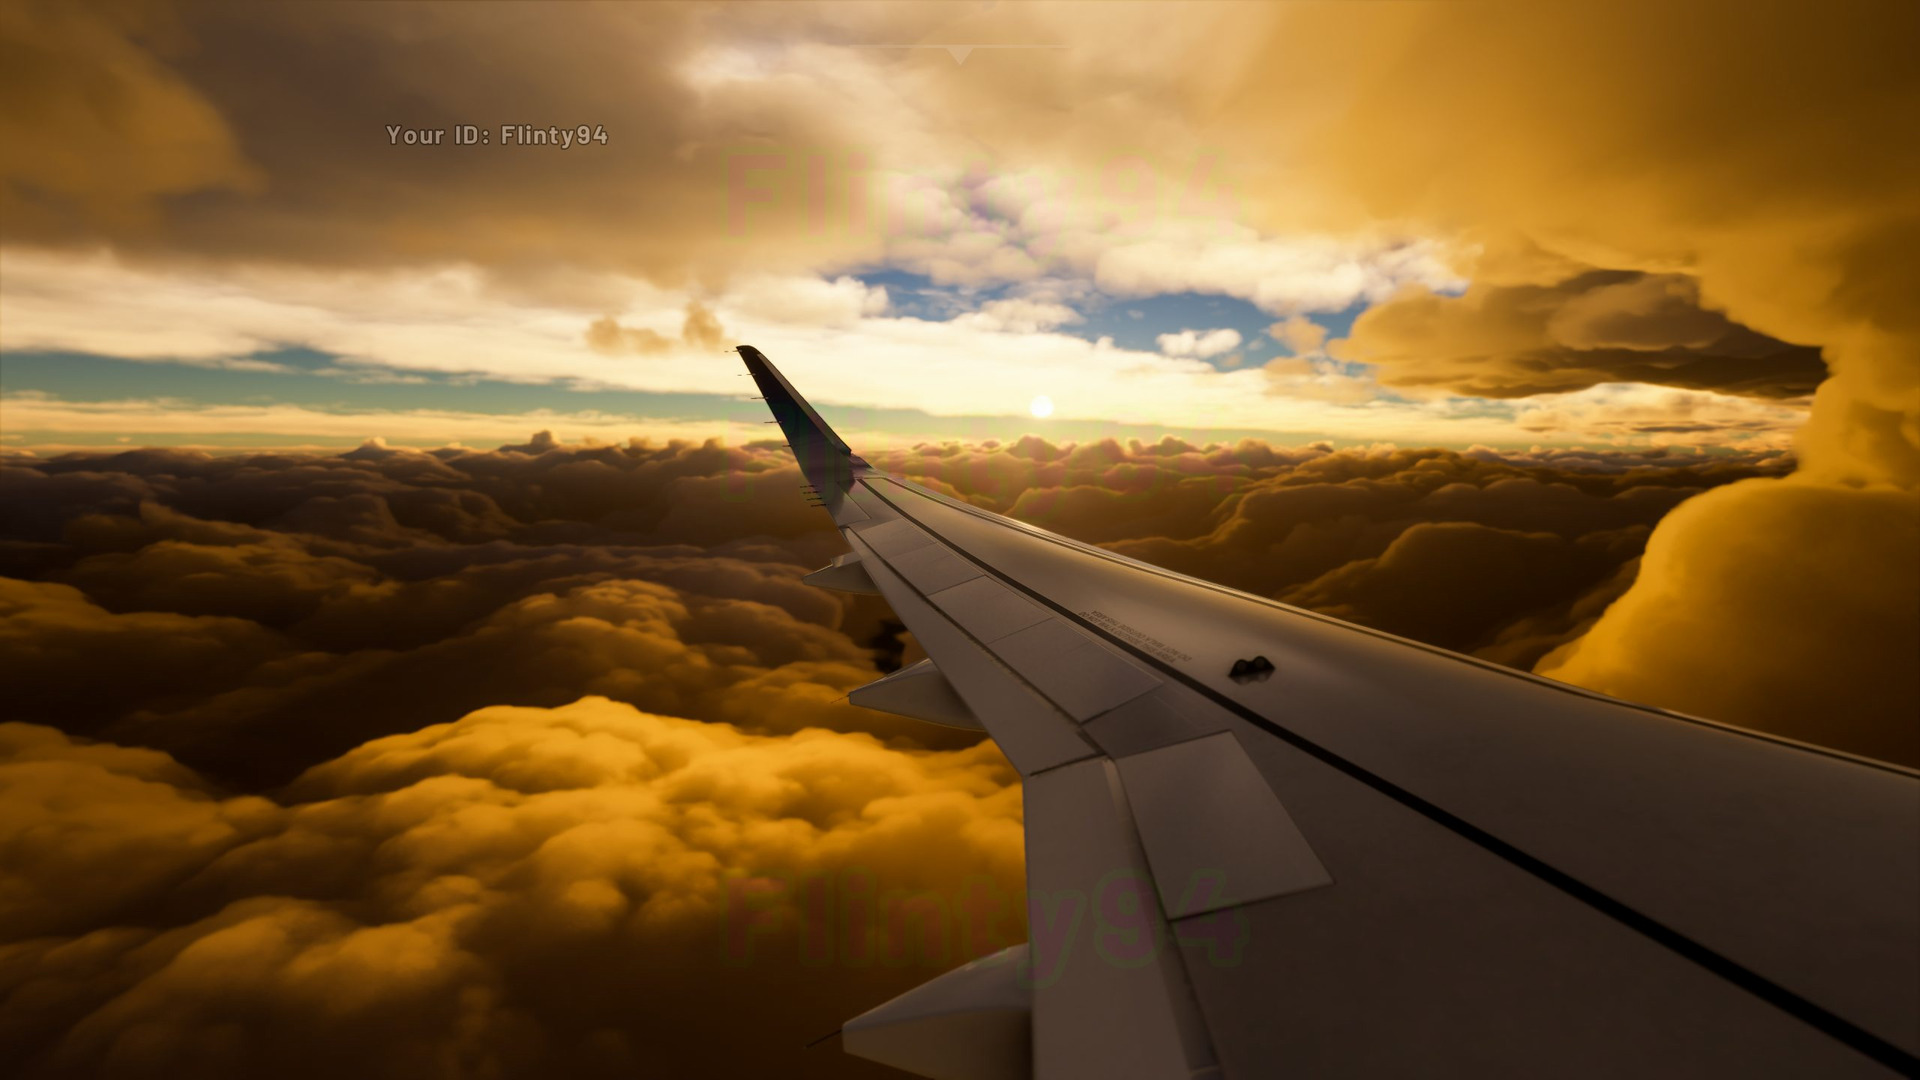 《微软飞行模拟》新截图和视频展示 体积云太美